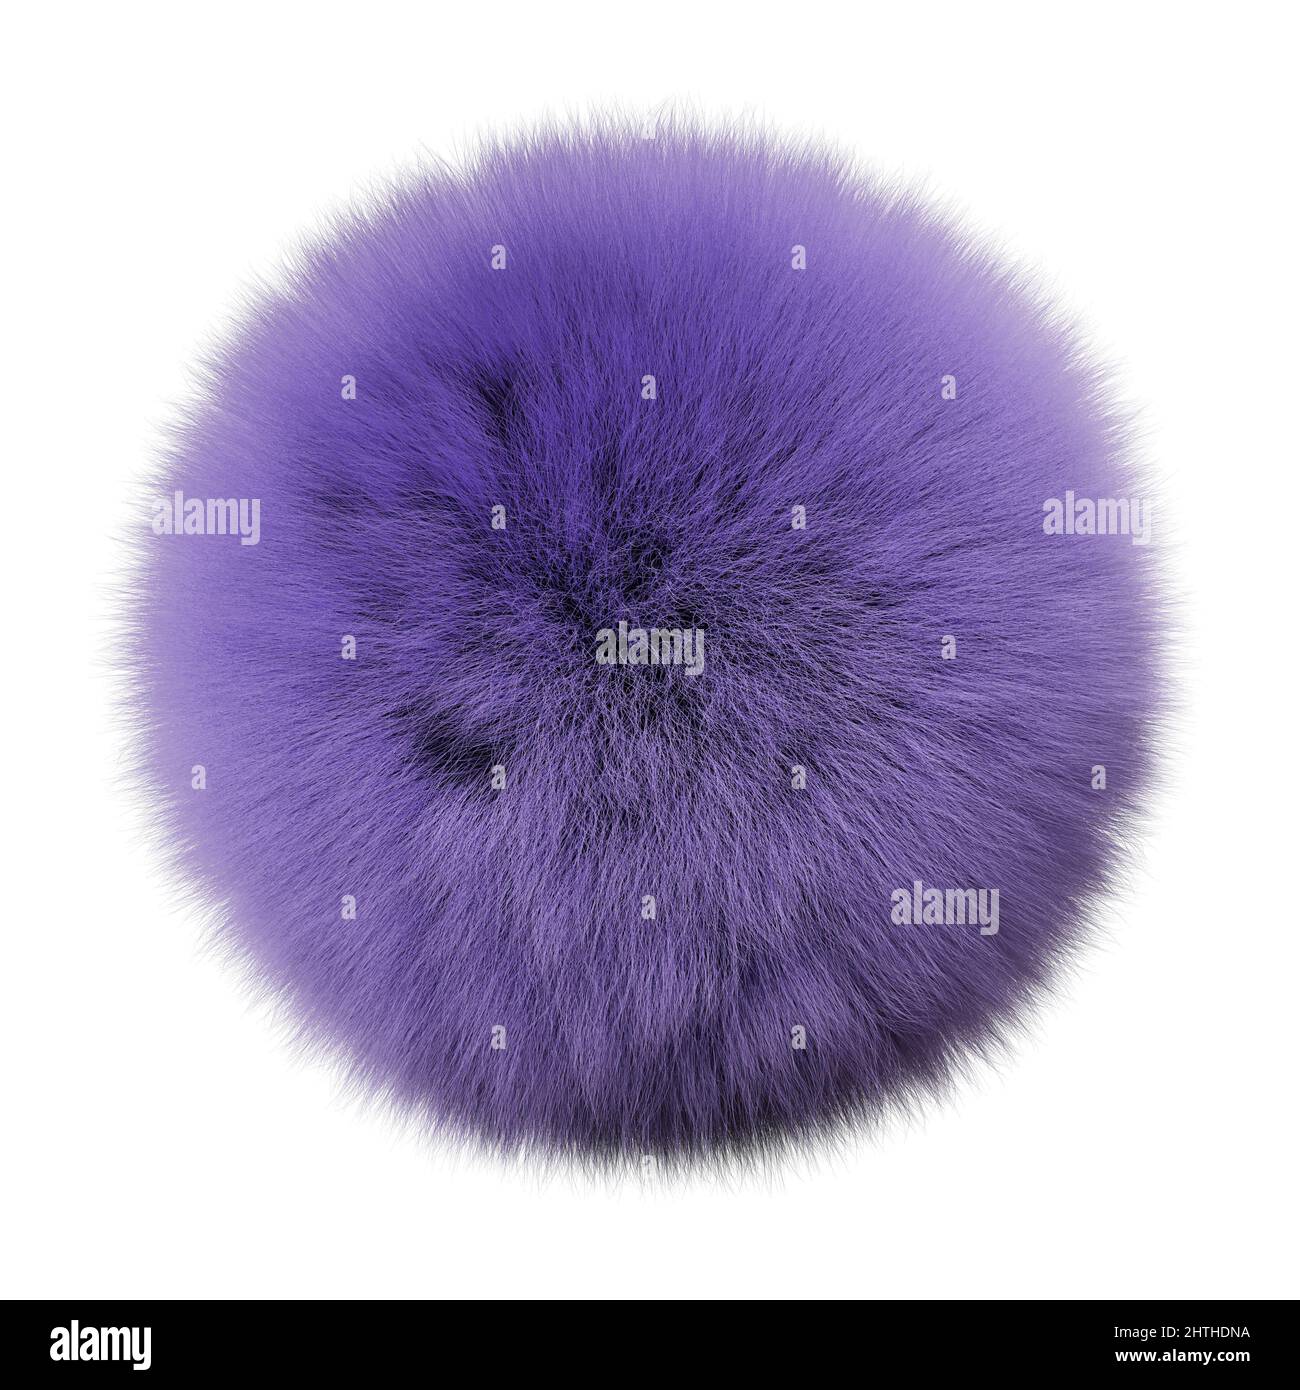 Flauschige Kugel, pelzige violette Kugel isoliert auf weißem Hintergrund Stockfoto